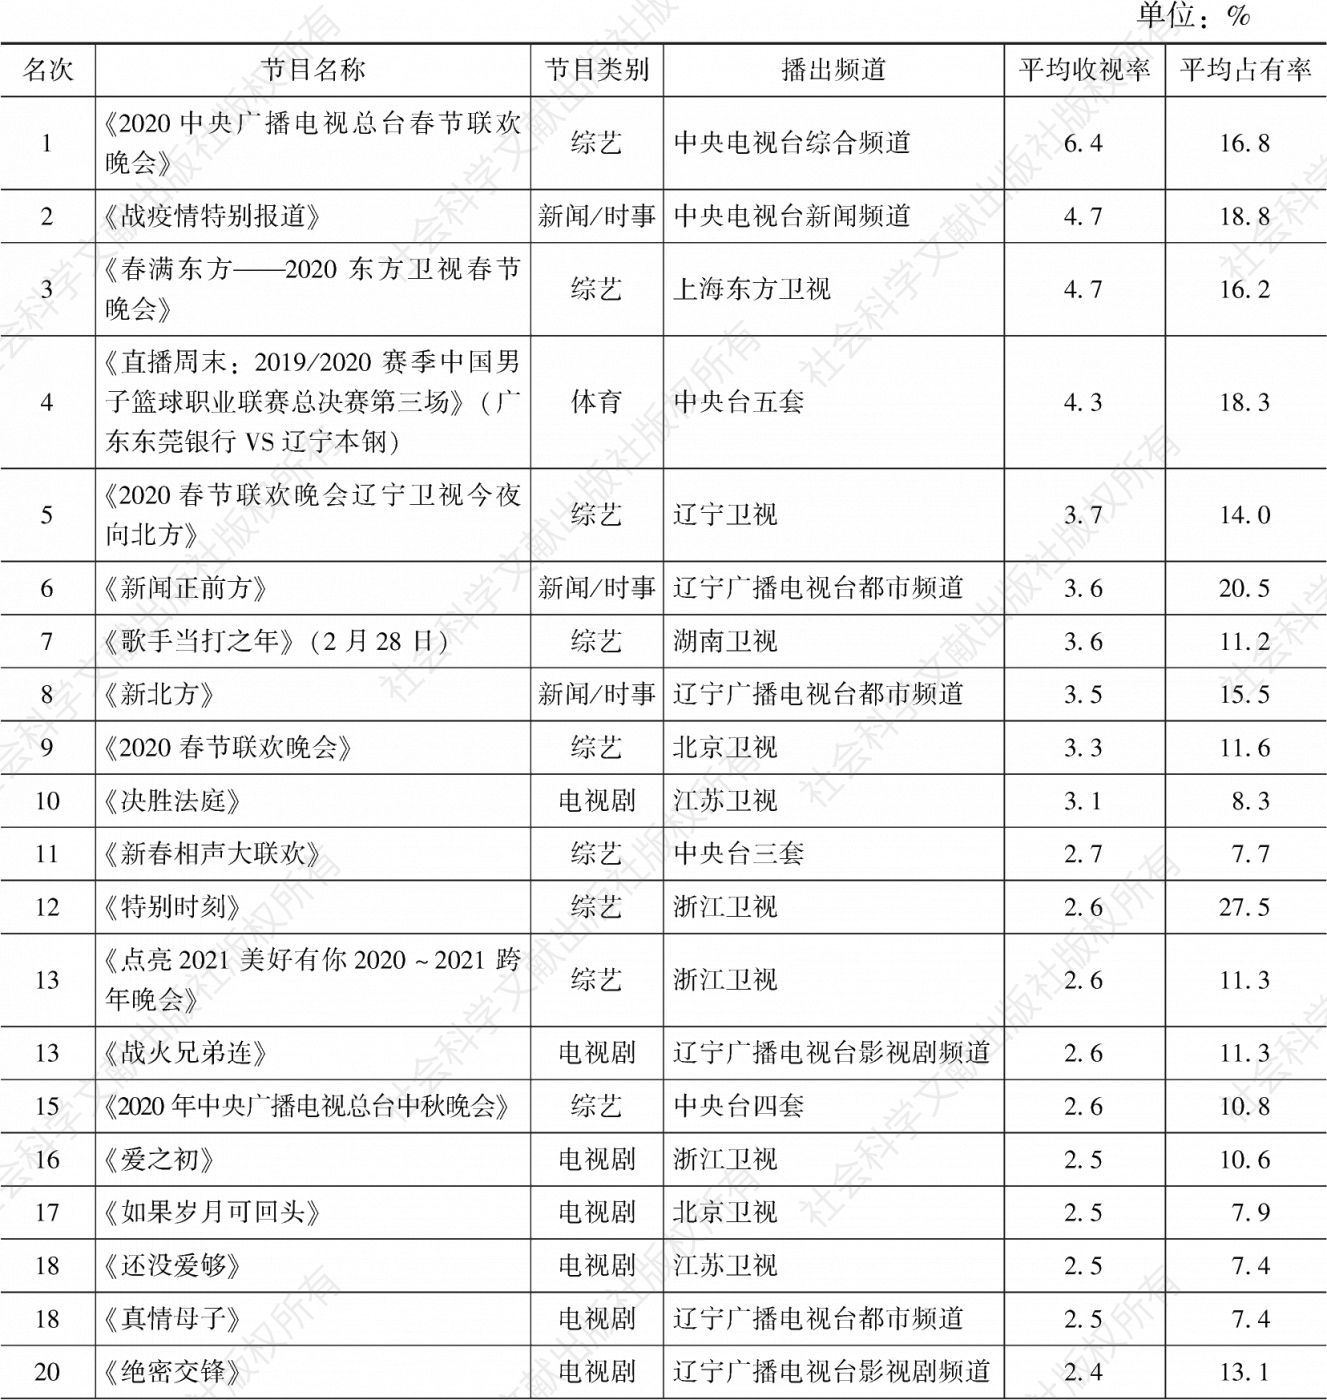 表3.51.7 2020年沈阳市场所有节目收视率排名前30